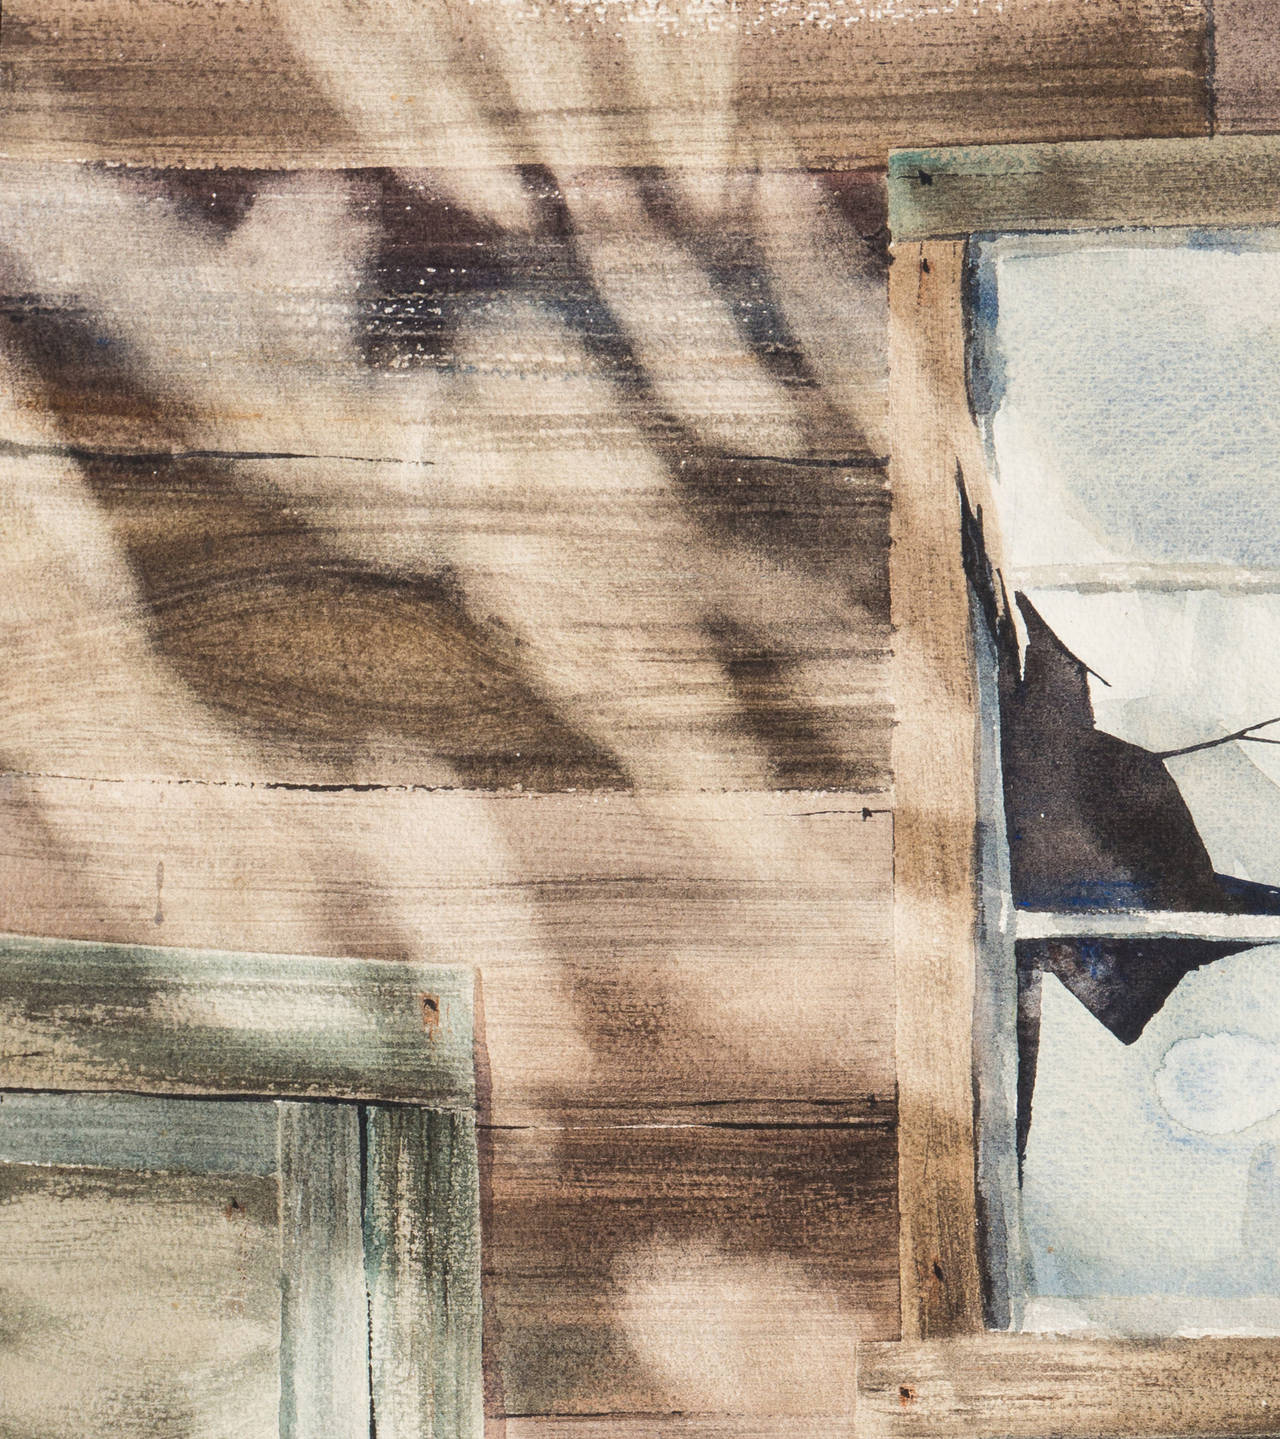 „Memory“, amerikanische Schule, Klappdeckelhaus, Lichtstudie, Fenster, San Diego – Painting von Sharon Hinckley